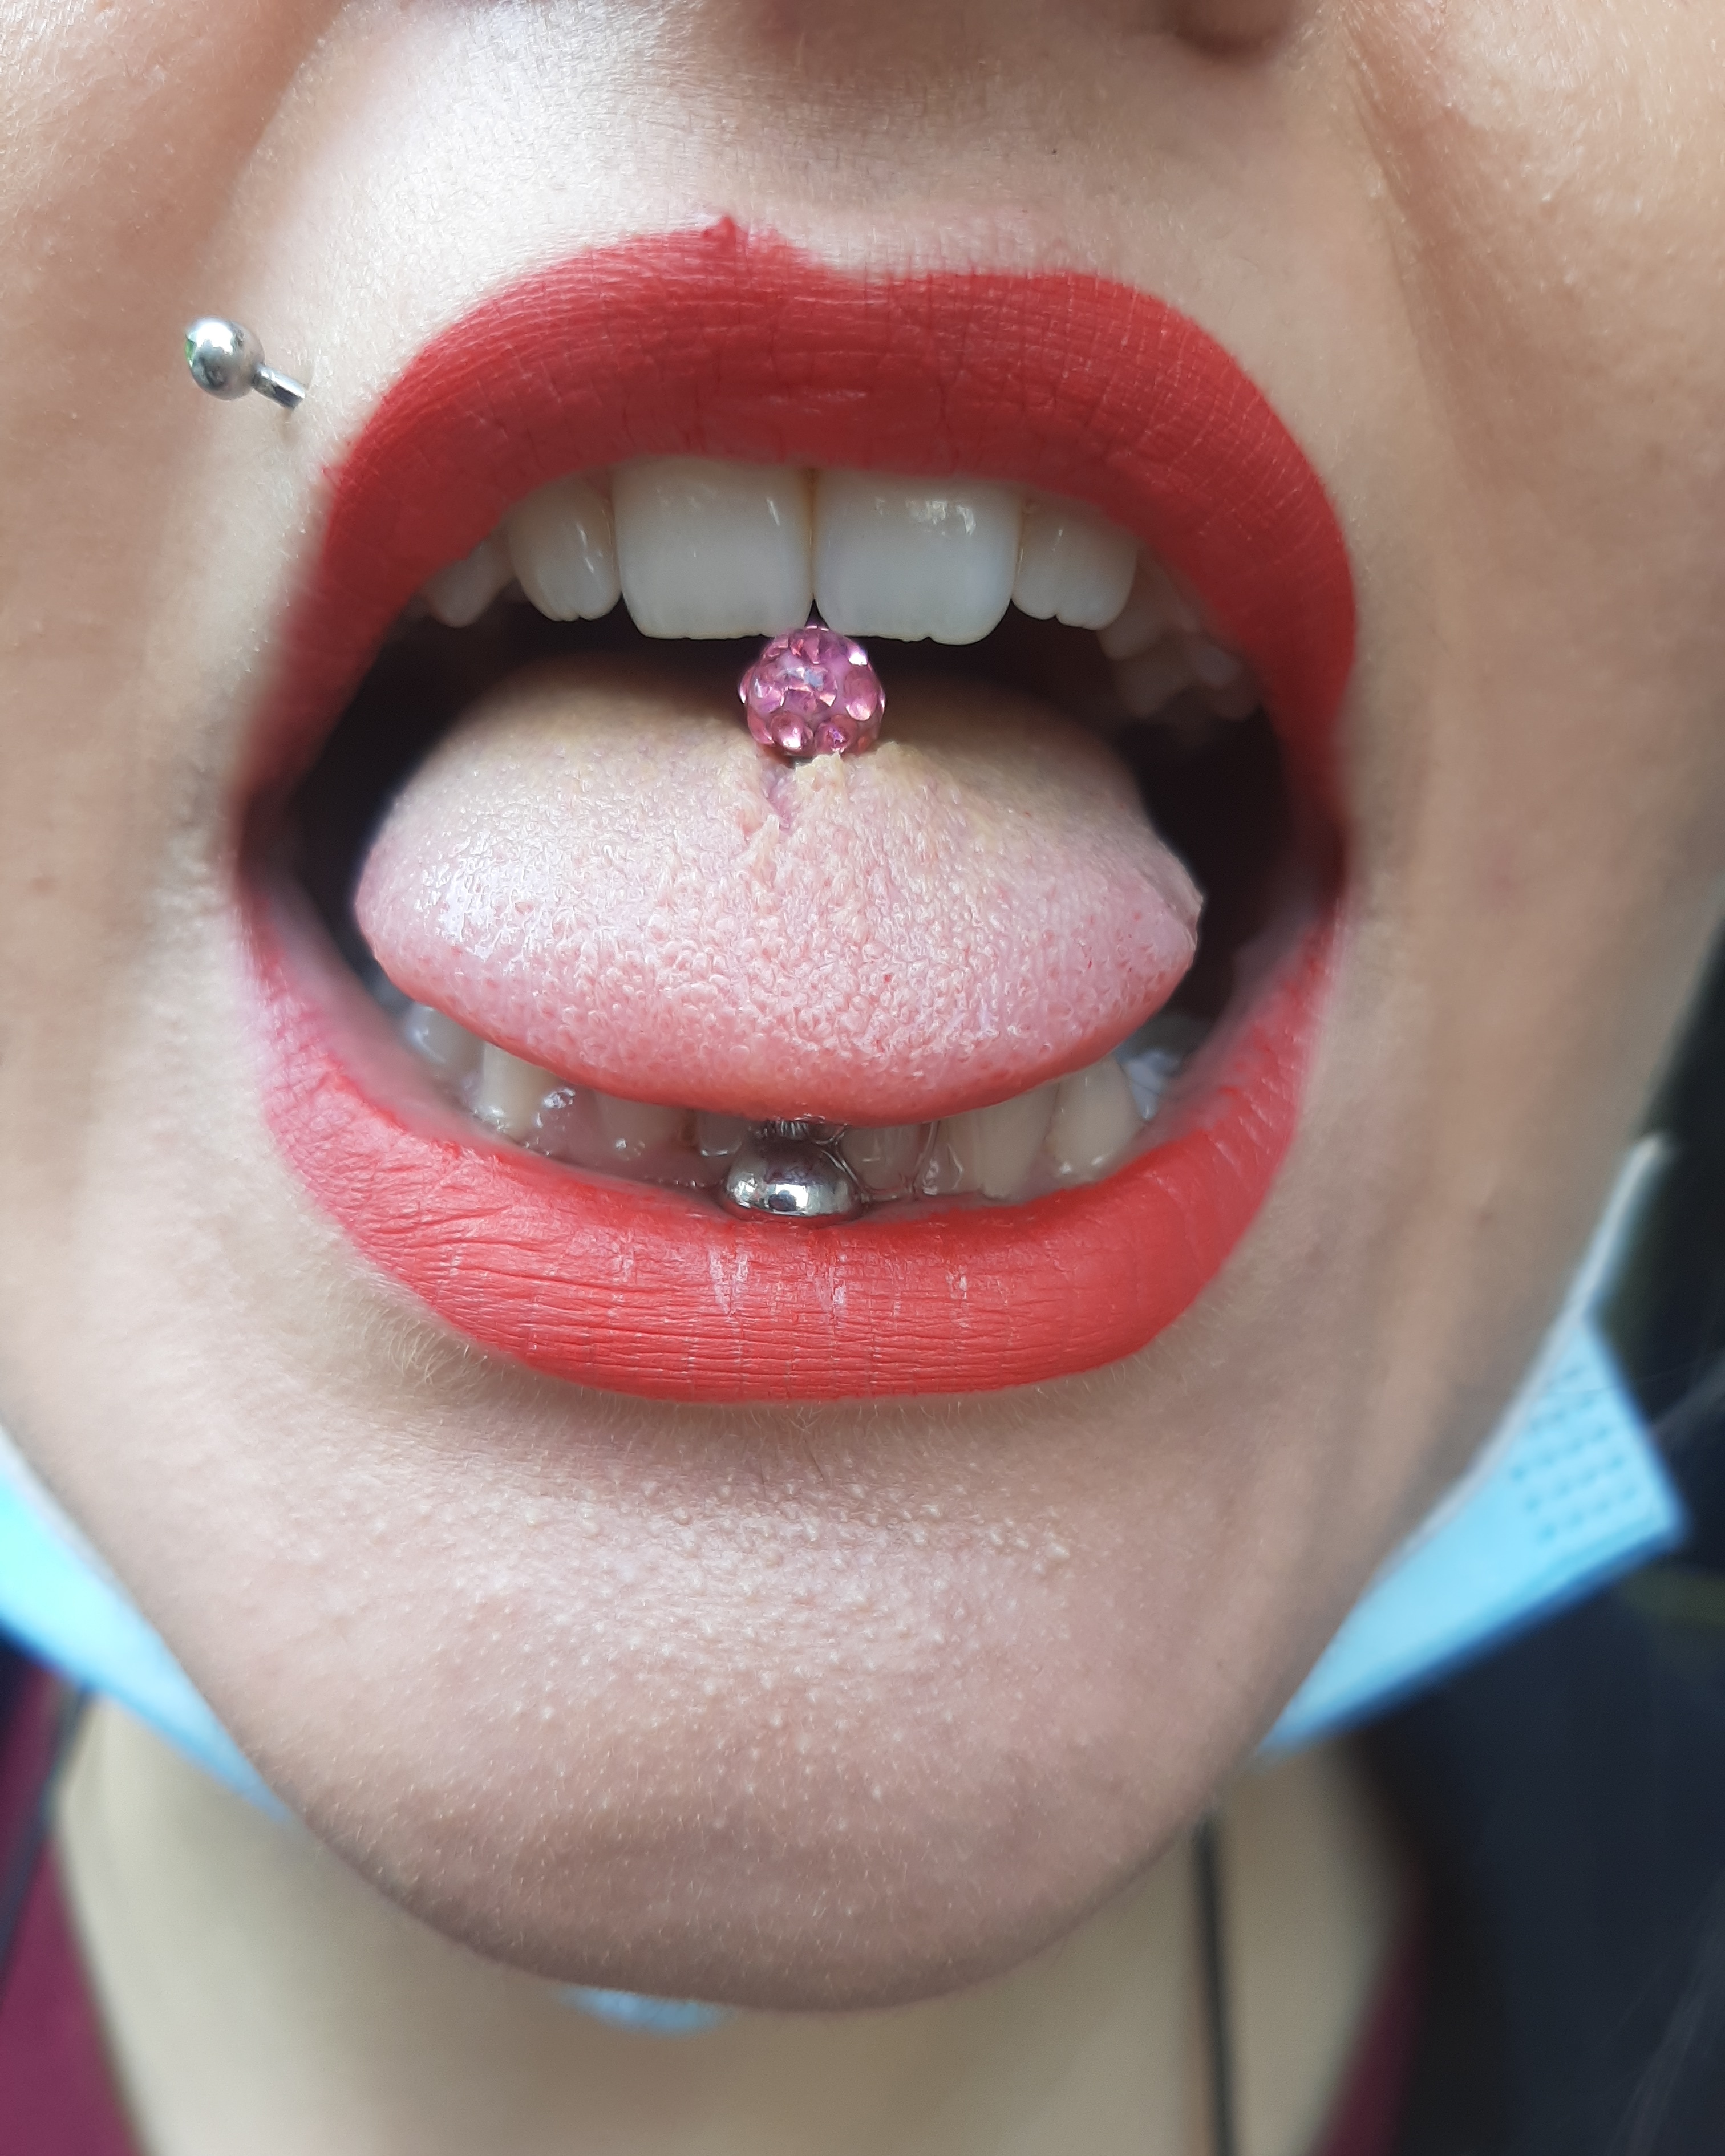 Tongue guarito